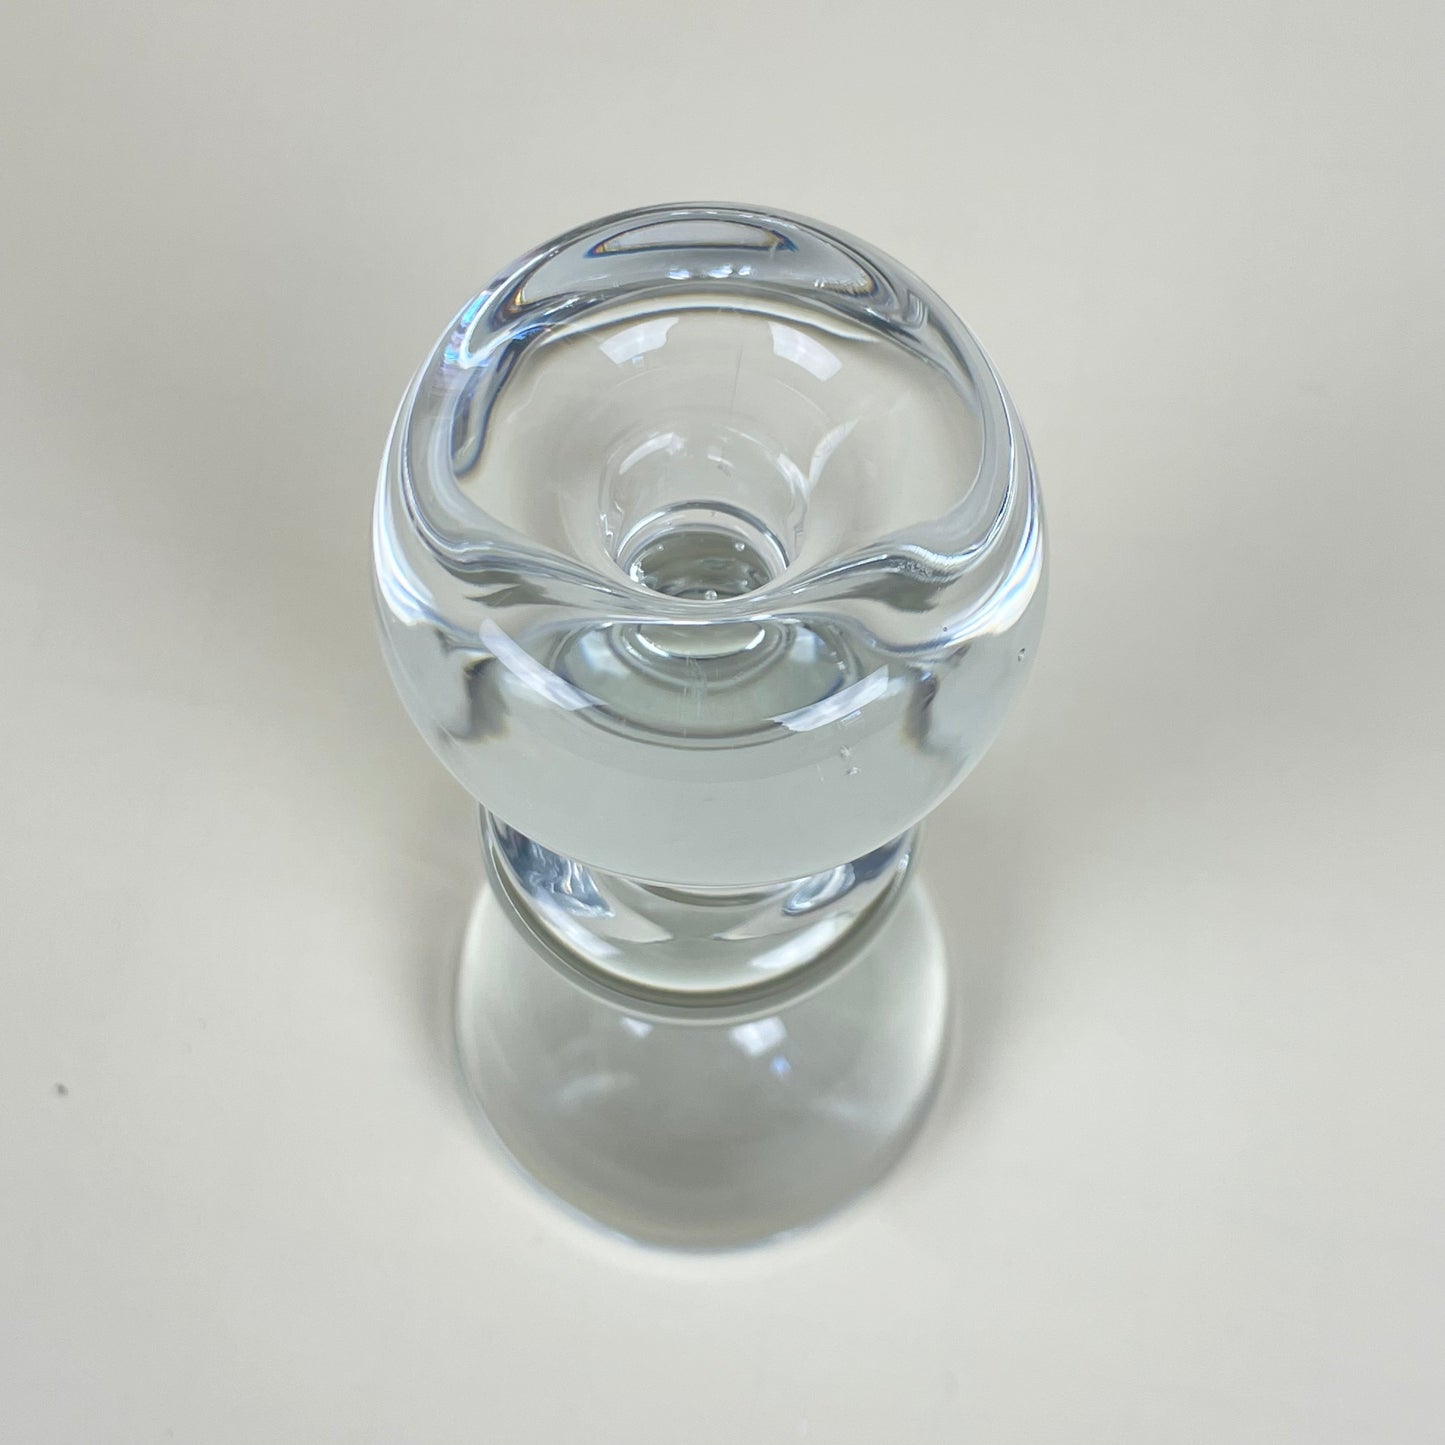 Candle holder in glass, vintage. Designed by Christer Sjögren